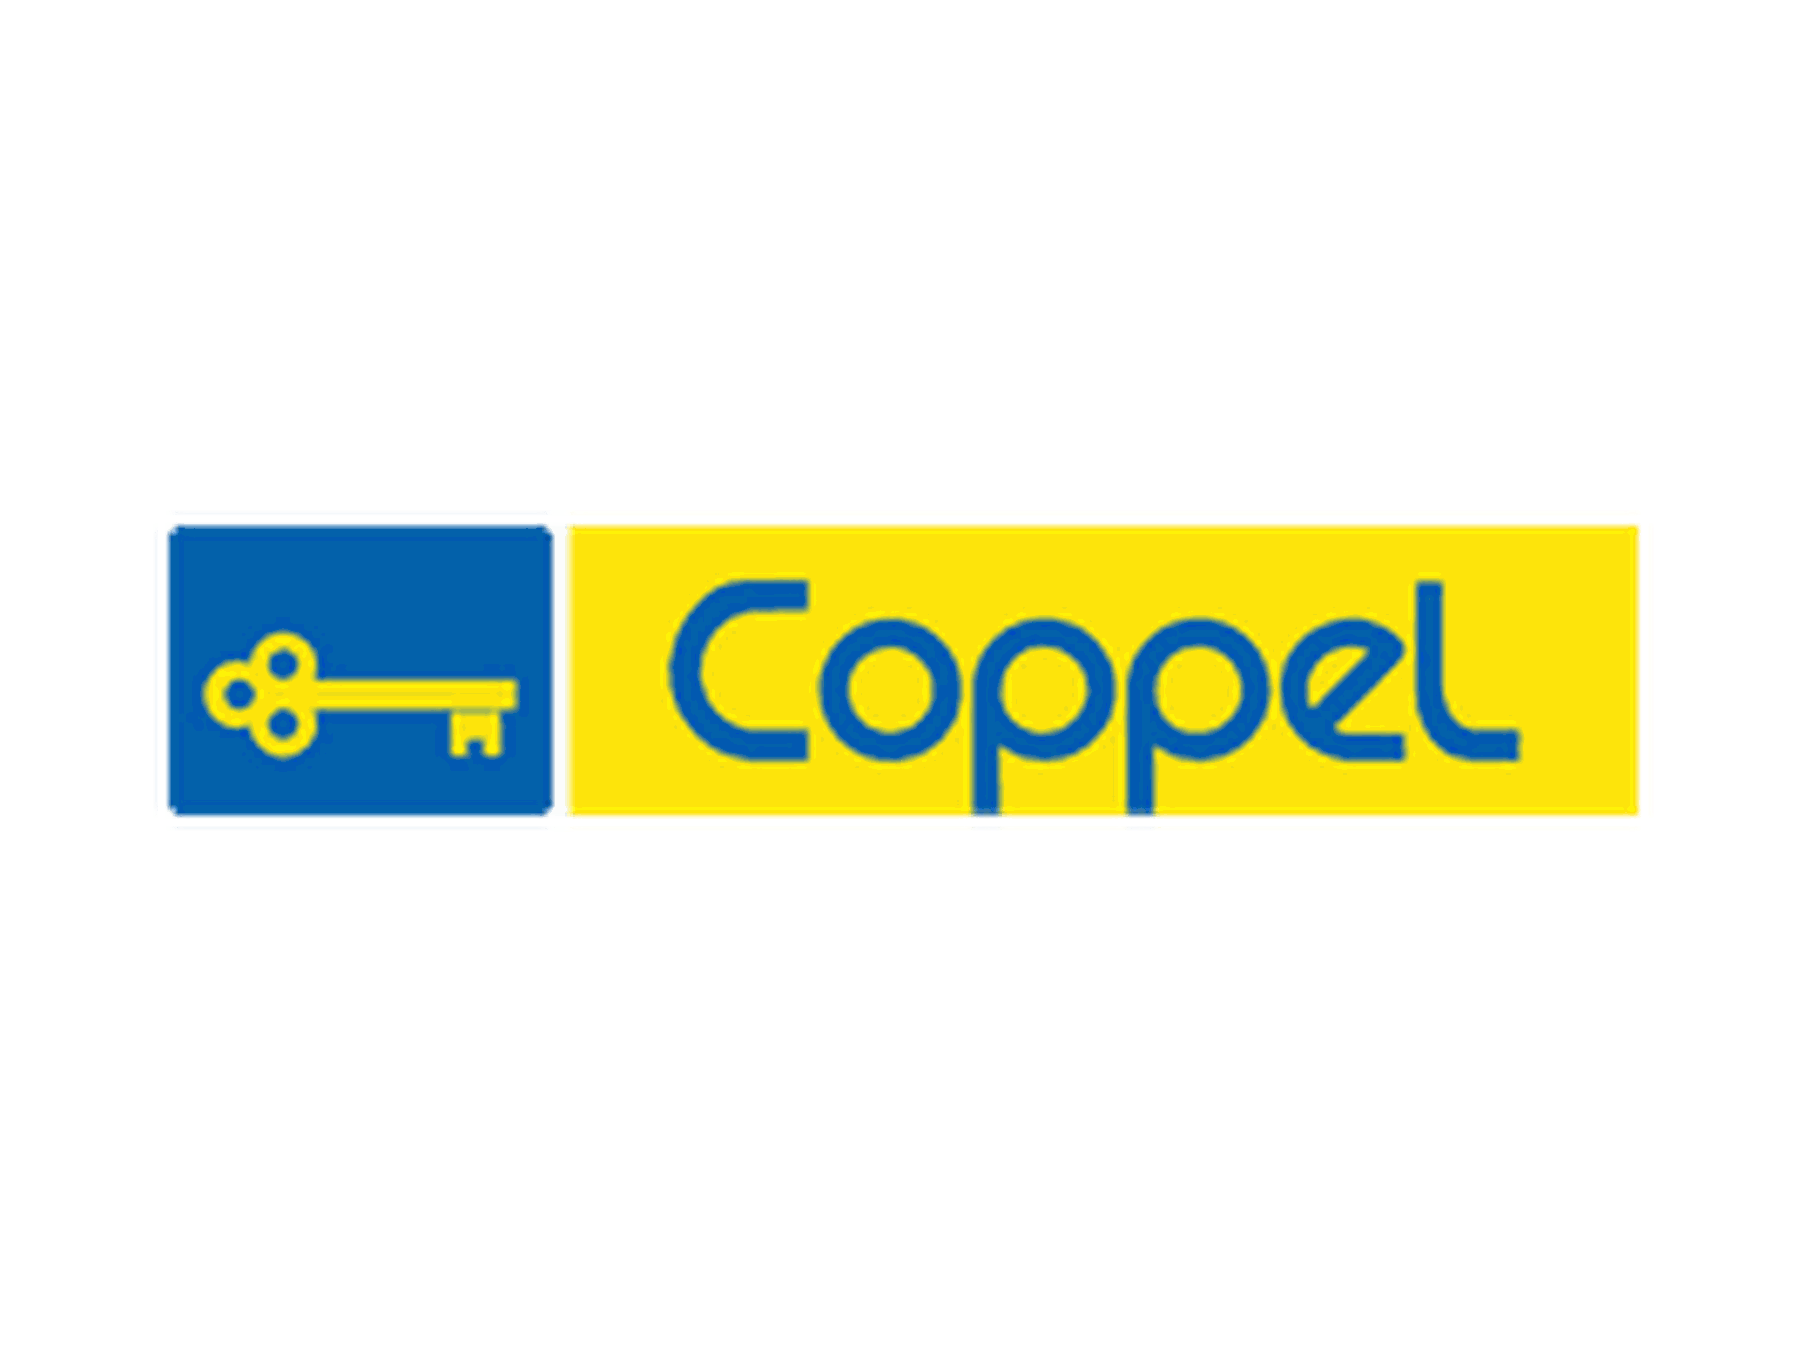 Promoción Coppel